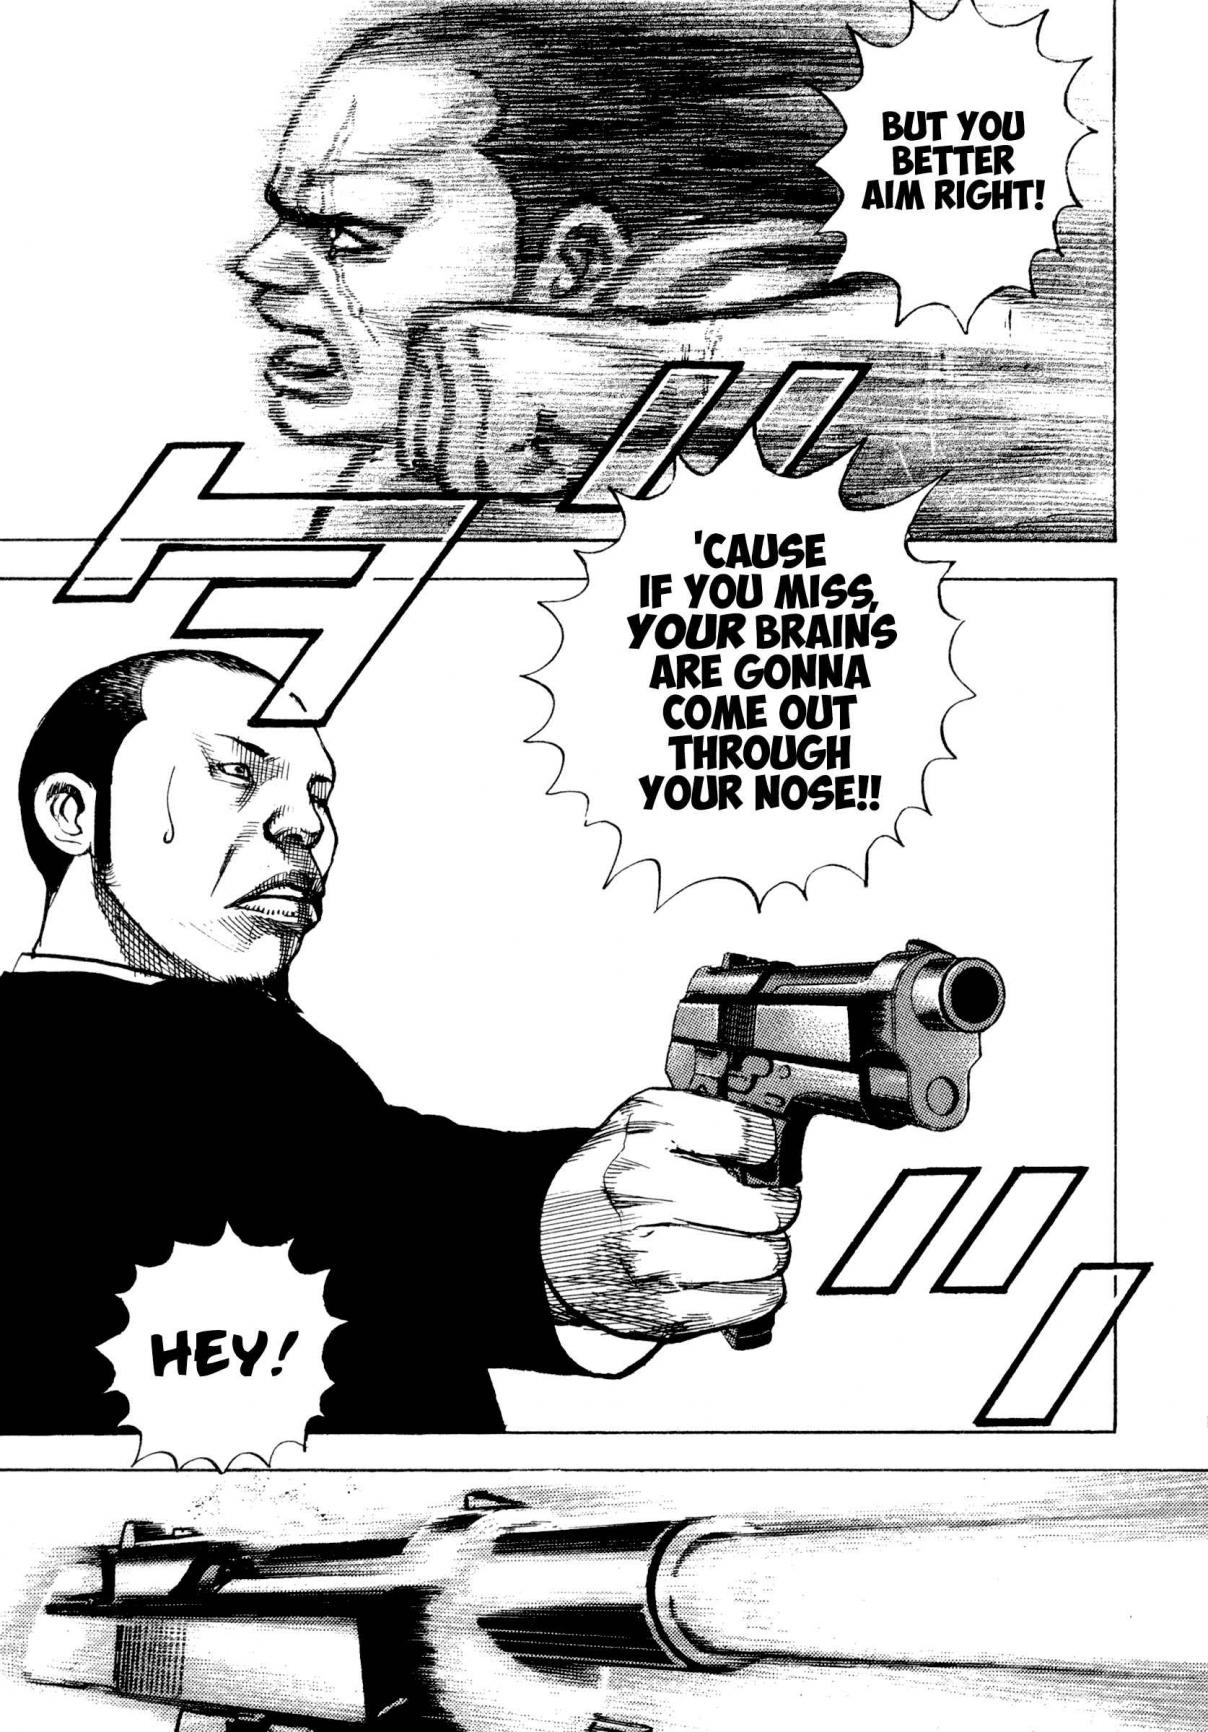 Kizu Darake no Jinsei Vol. 4 Ch. 24 The Yakuza Way